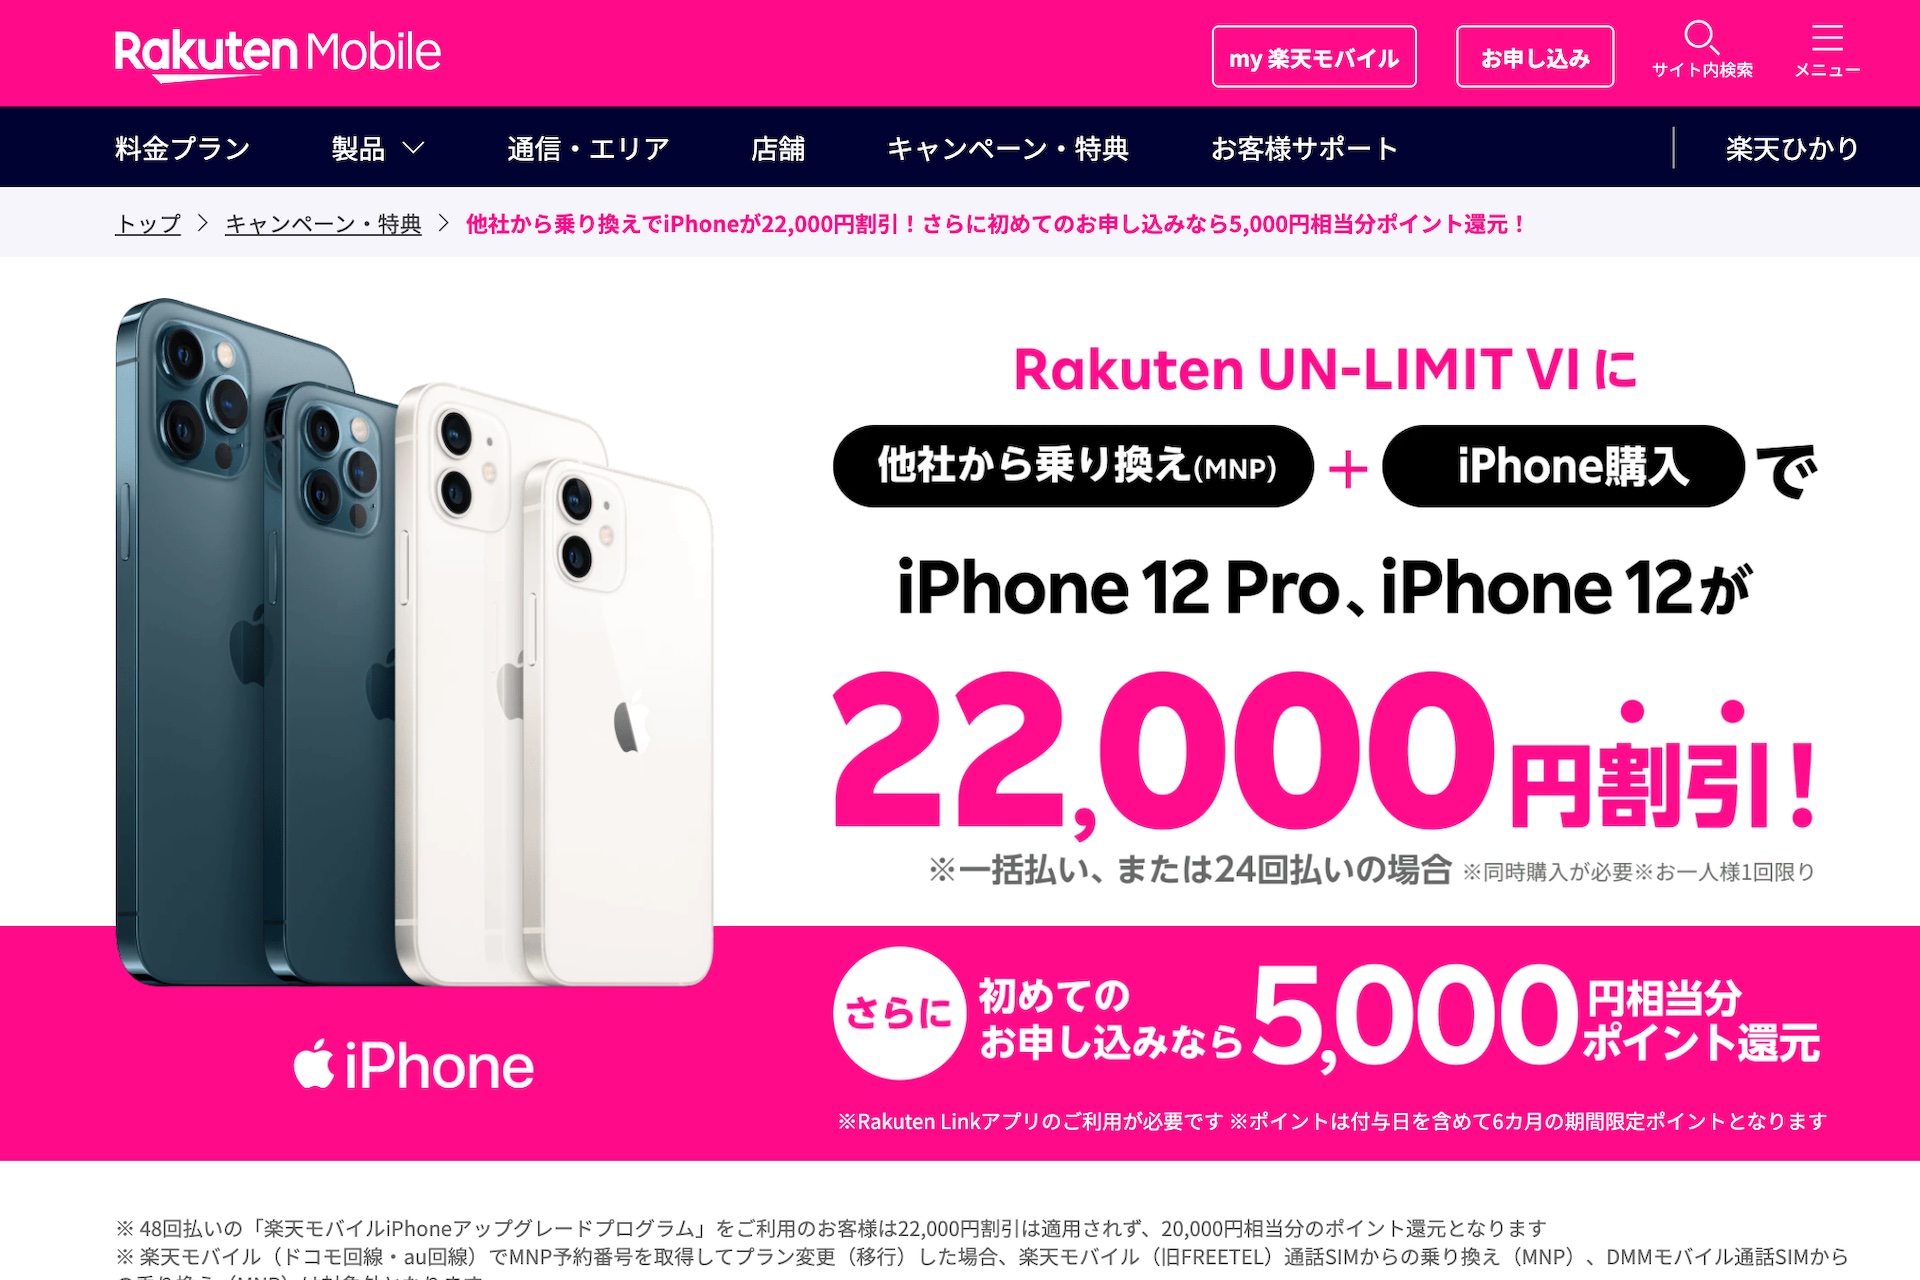 楽天モバイルがrakuten Un Limit Viをmnpで契約するとiphoneが2万2千円割引などとなるキャンペーンを開始 5千ポイントプレゼントも併用可 ライブドアニュース